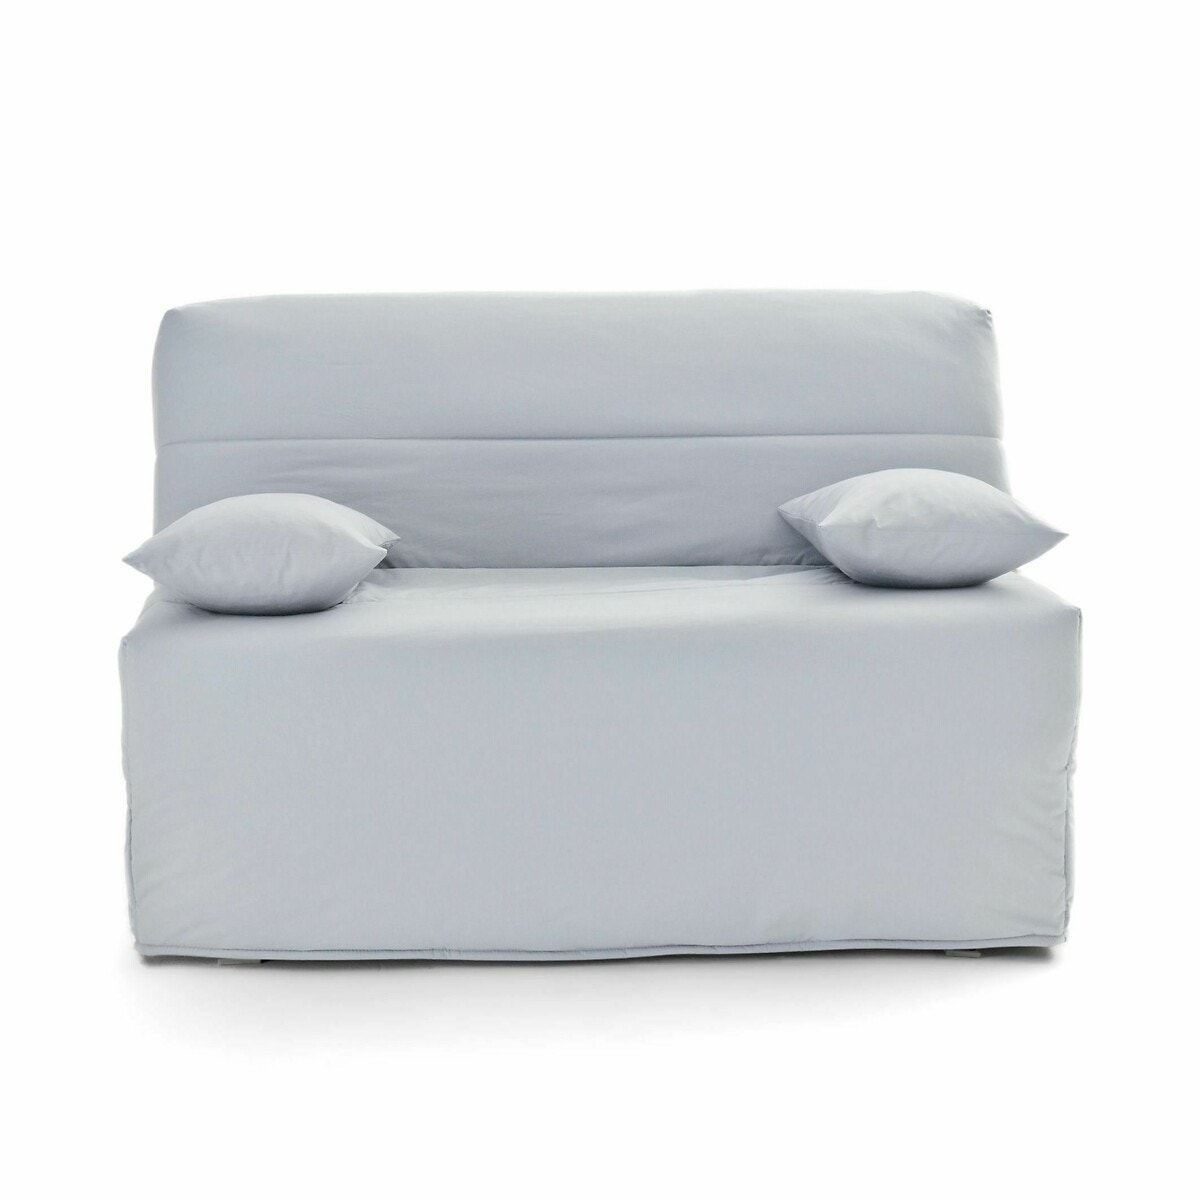 Σπίτι > Έπιπλα > Καθιστικό > Καναπέδες-κρεβάτια > Πτυσσόμενοι καναπέδες BZ Πτυσσόμενος καναπές-κρεβάτι με αφρό Bultex 9 εκ.